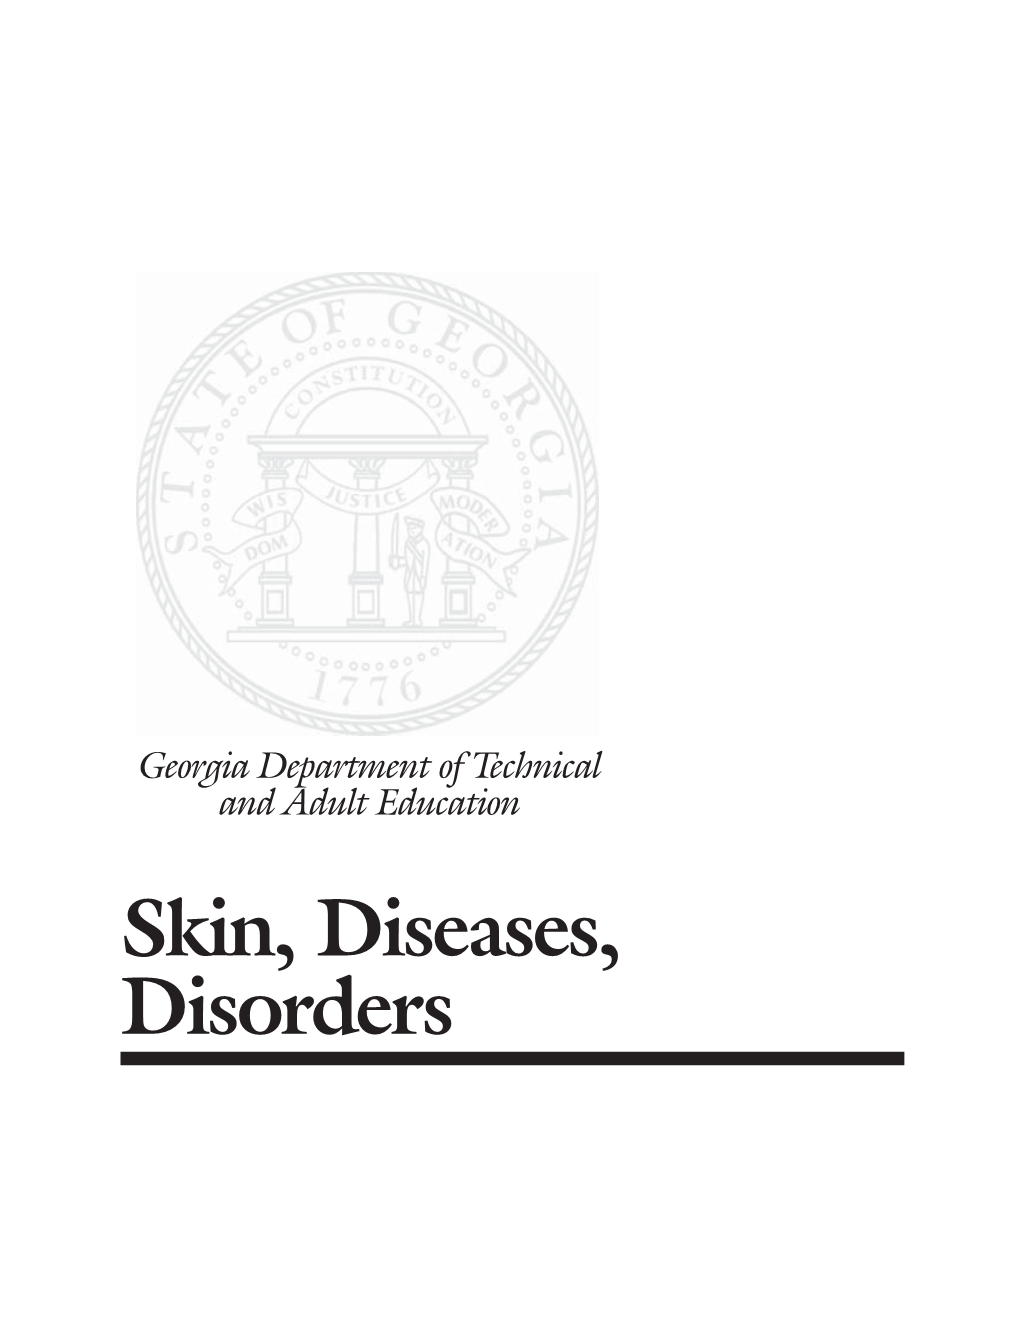 Skin, Diseases, Disorders-PG.Pmd